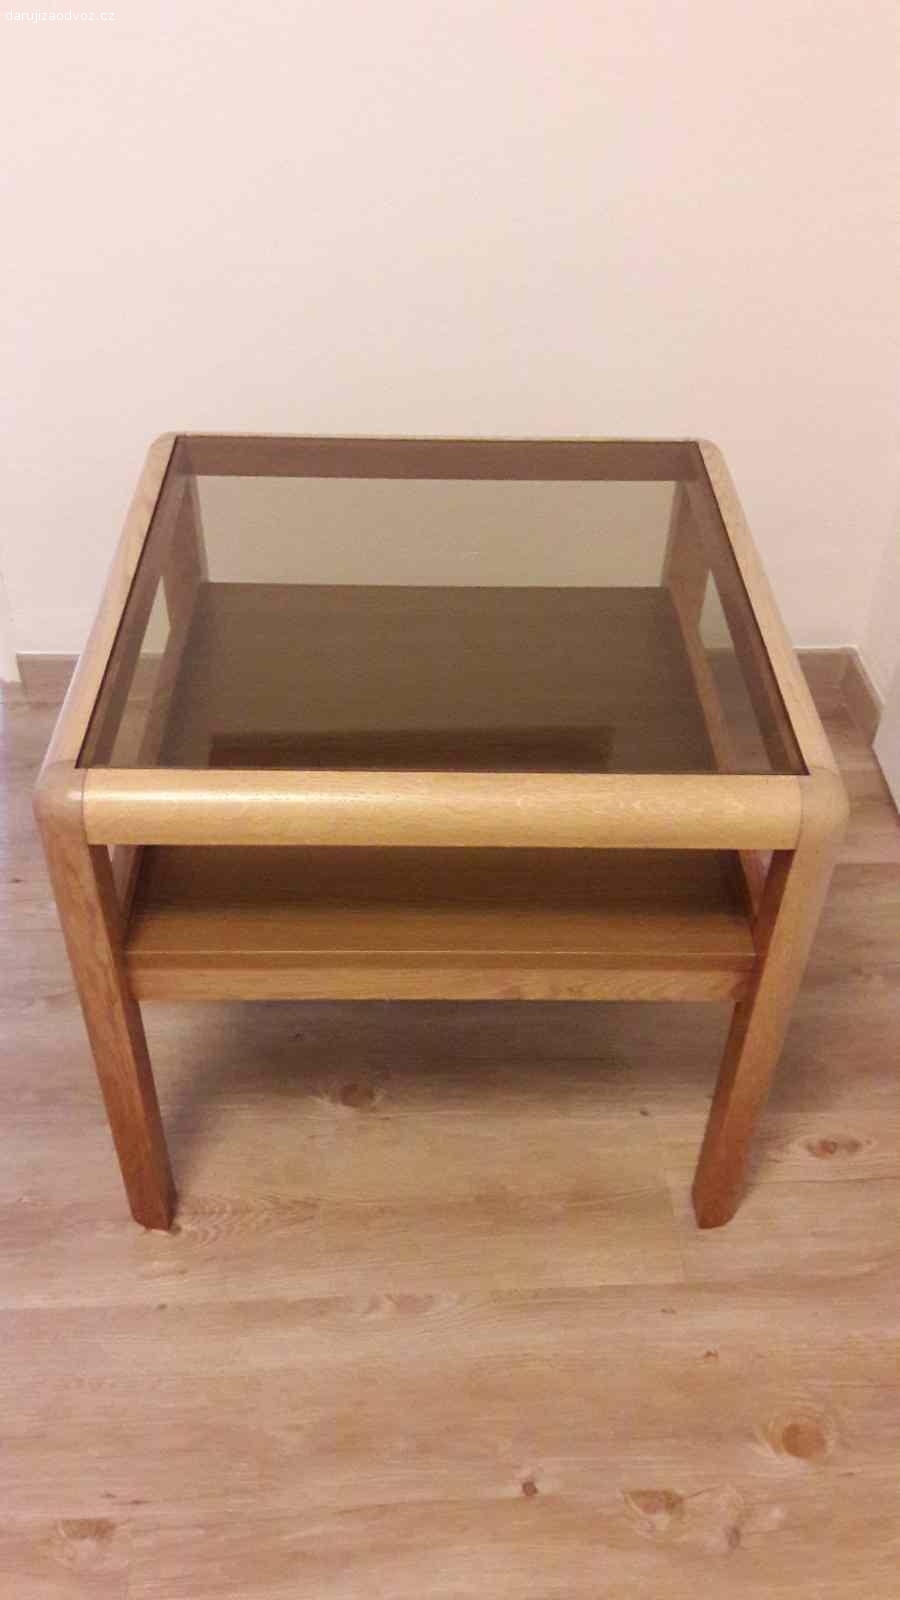 Daruji konferenční stolek. Malý konferenční stolek, dřevo - masiv, horní část - sklo. Velmi zachovalý.
Výška: 55 cm
Šířka: 58x58 cm